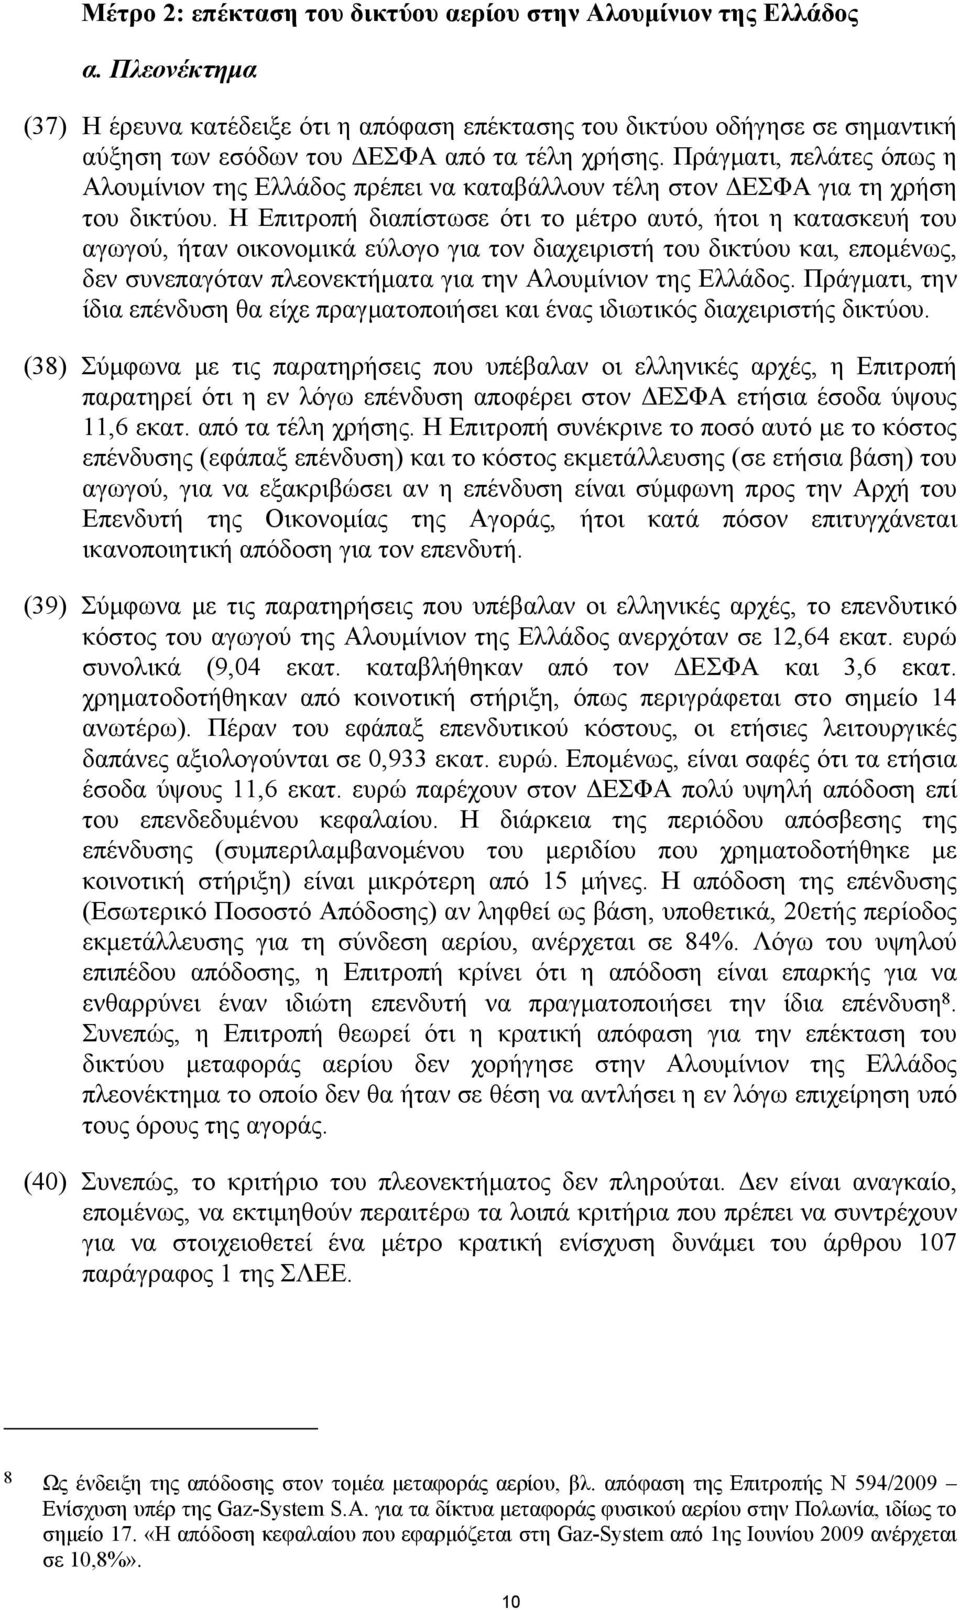 Πράγματι, πελάτες όπως η Αλουμίνιον της Ελλάδος πρέπει να καταβάλλουν τέλη στον ΔΕΣΦΑ για τη χρήση του δικτύου.